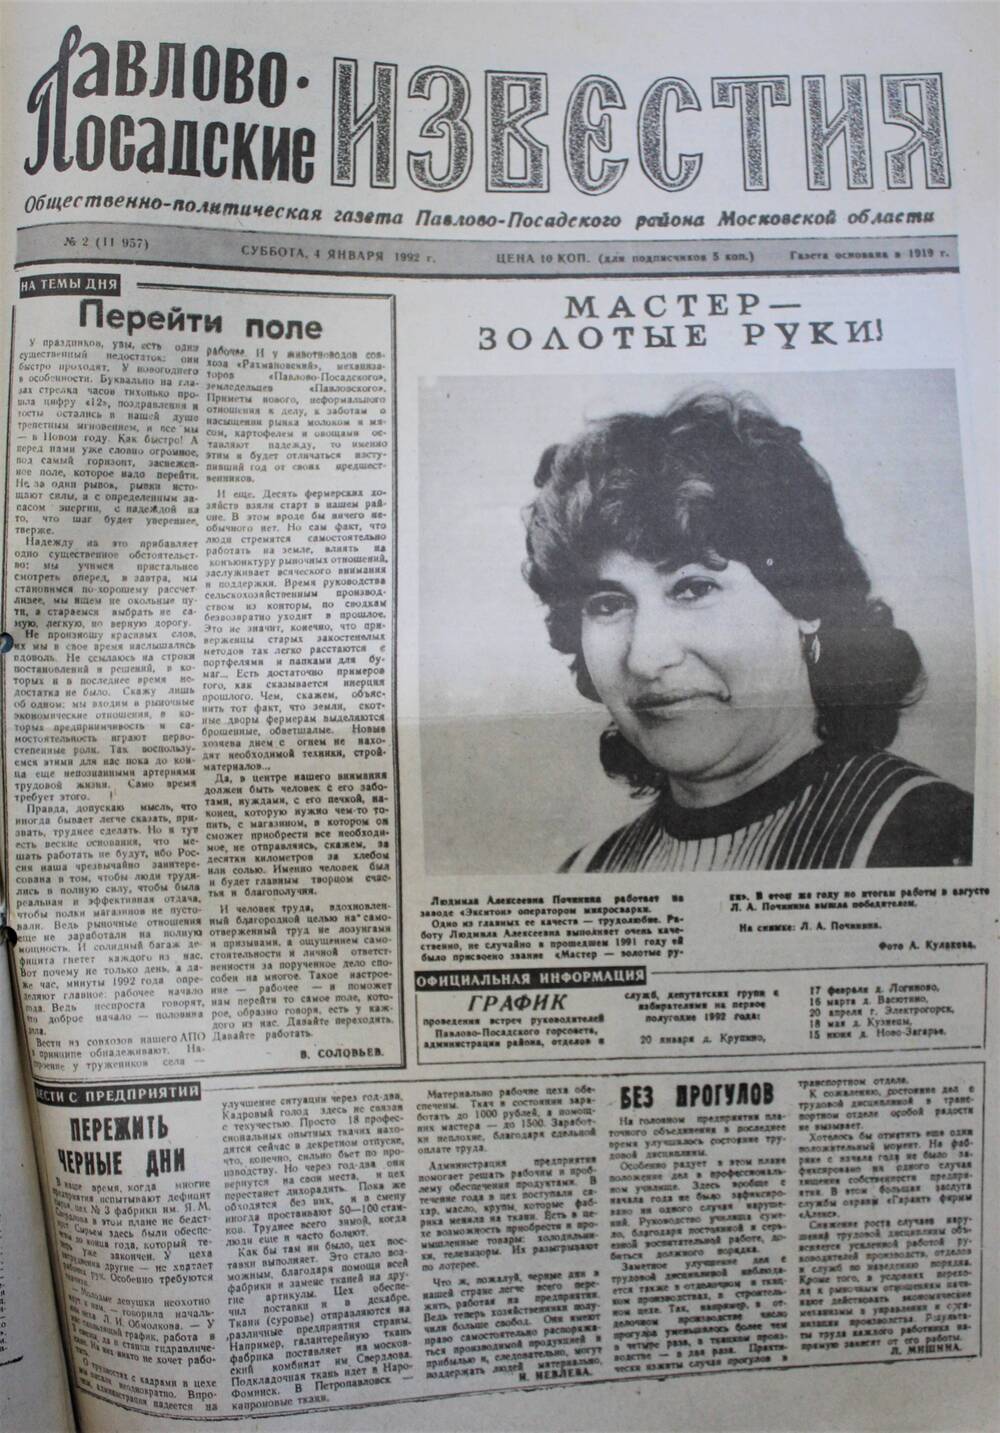 Газета Павлово-Посадские известия № 2 (11957)  от 4 января 1992 г.